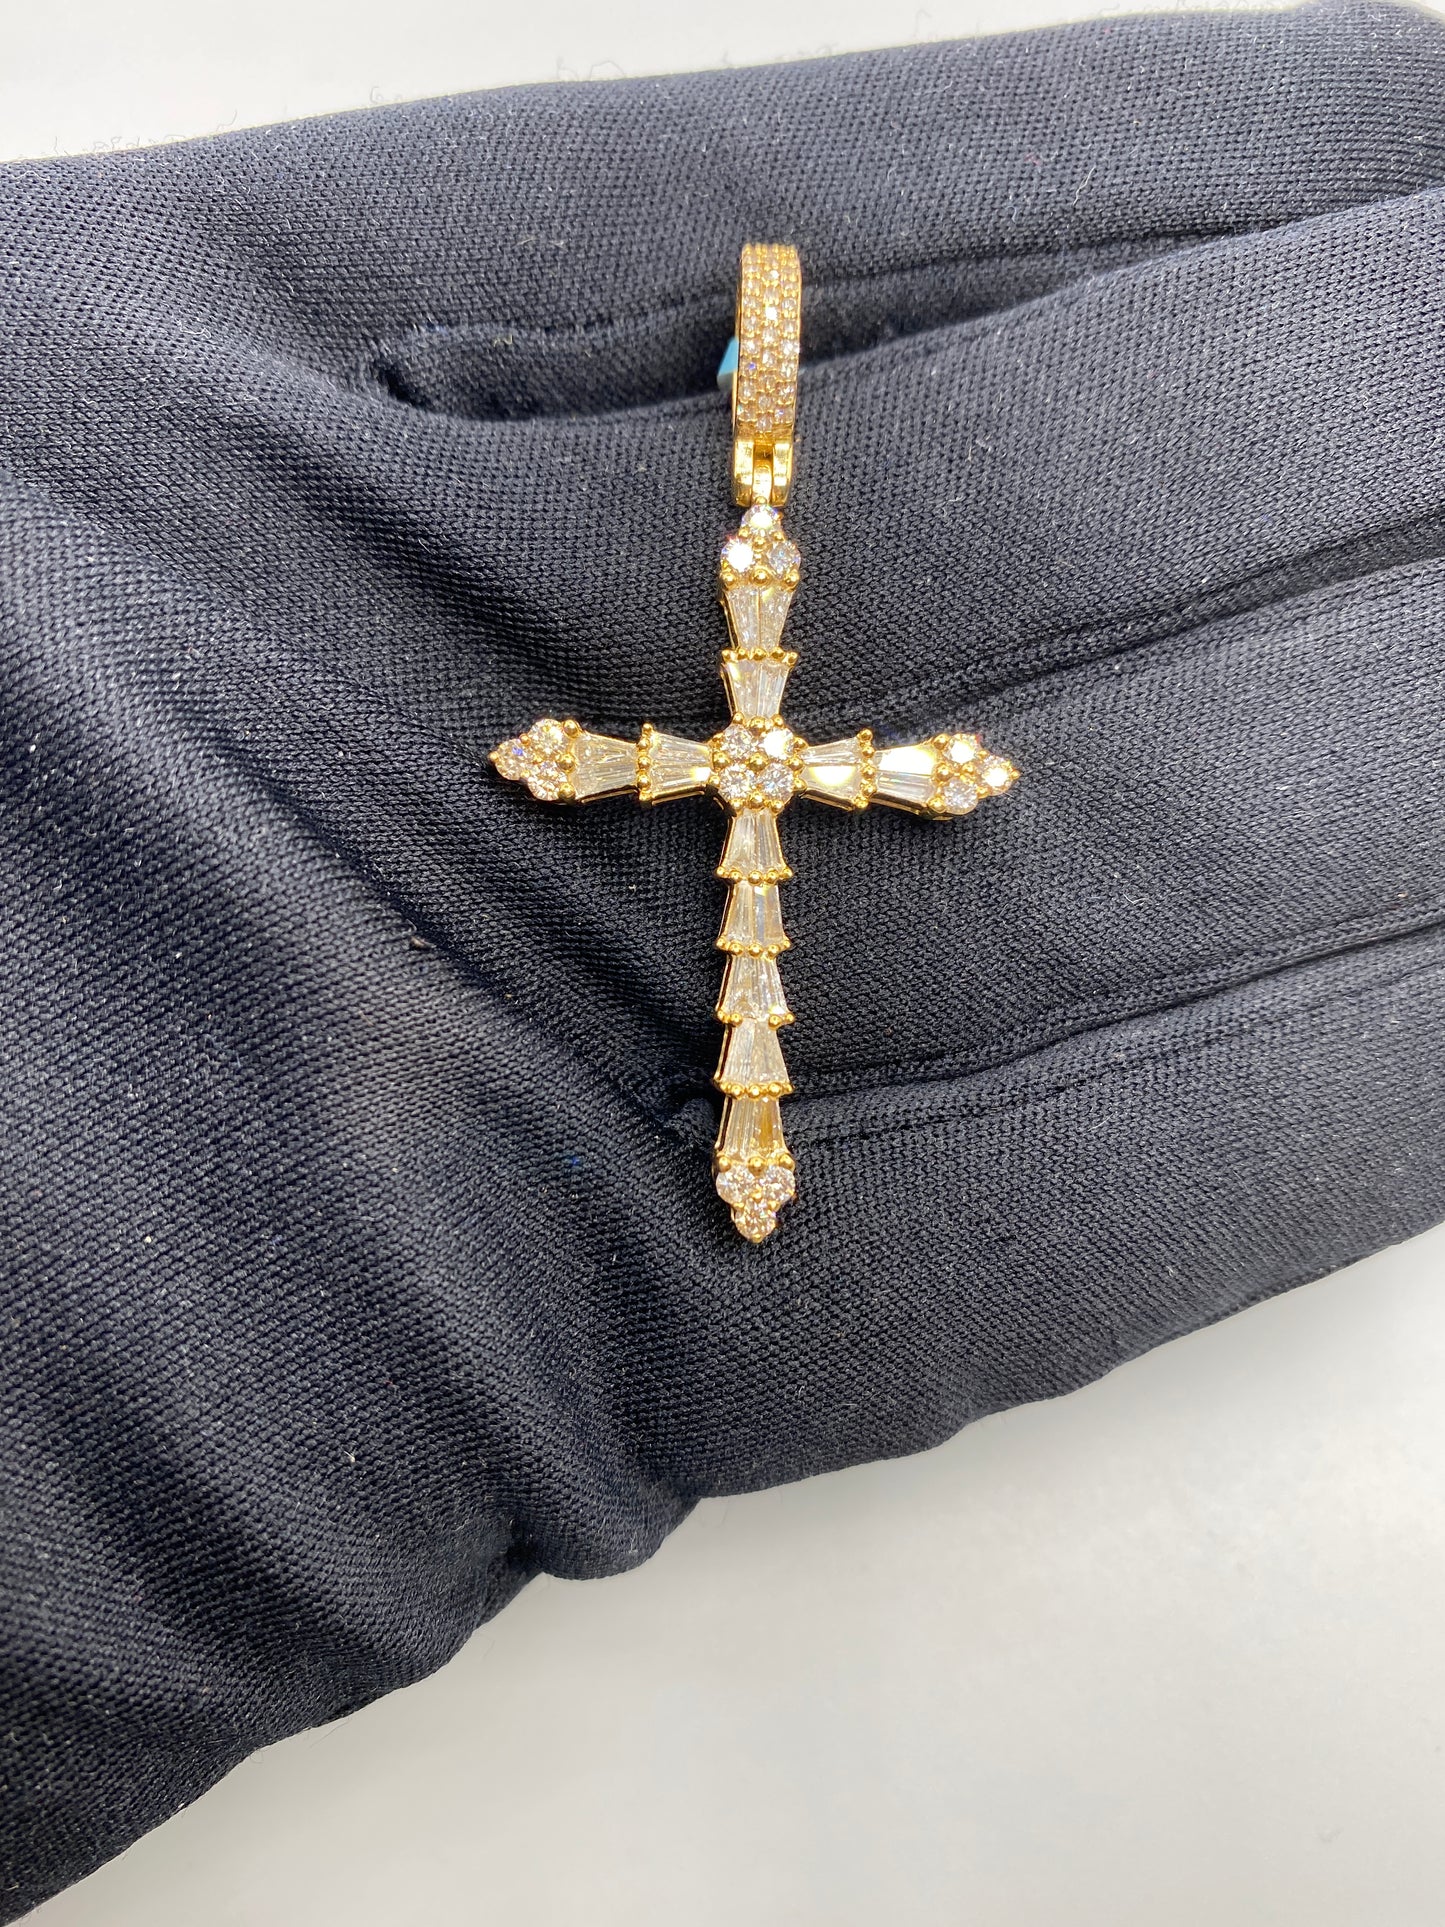 14K Holy Spirit Cross Diamond Baguette Pendant